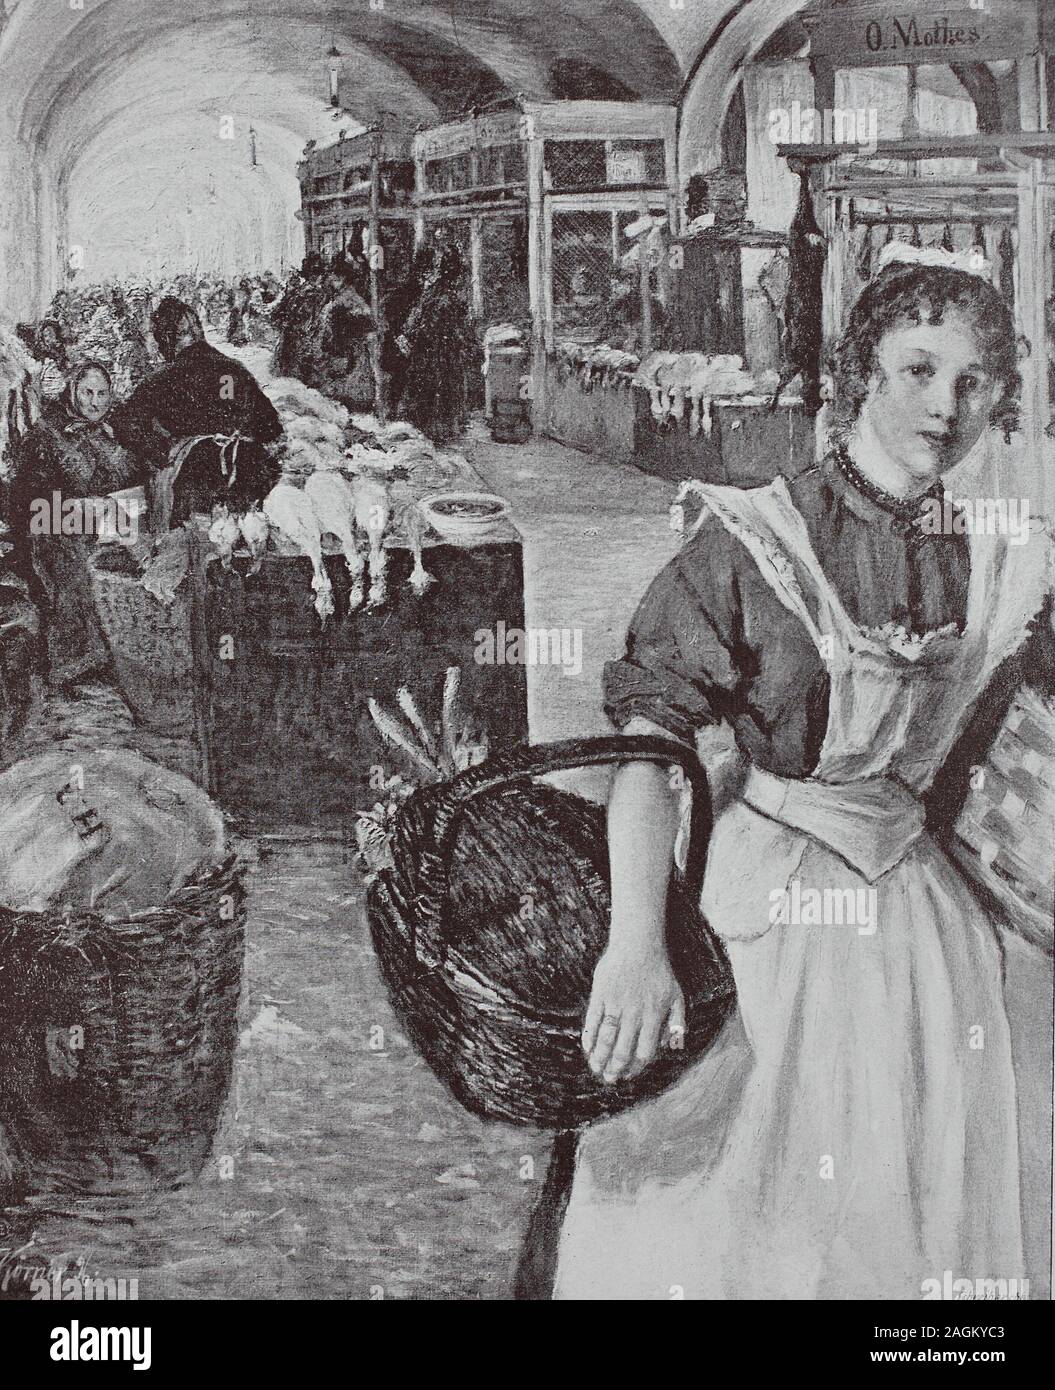 Woman shopping au marché couvert à Dresde, Allemagne, tirage original de l'année 1899, Frau, die am Marktsaal à Dresde, Allemagne, von Originalvorlage einkauft, Reproduktion aus dem 19. Jahrhundert, OECD numérique Banque D'Images